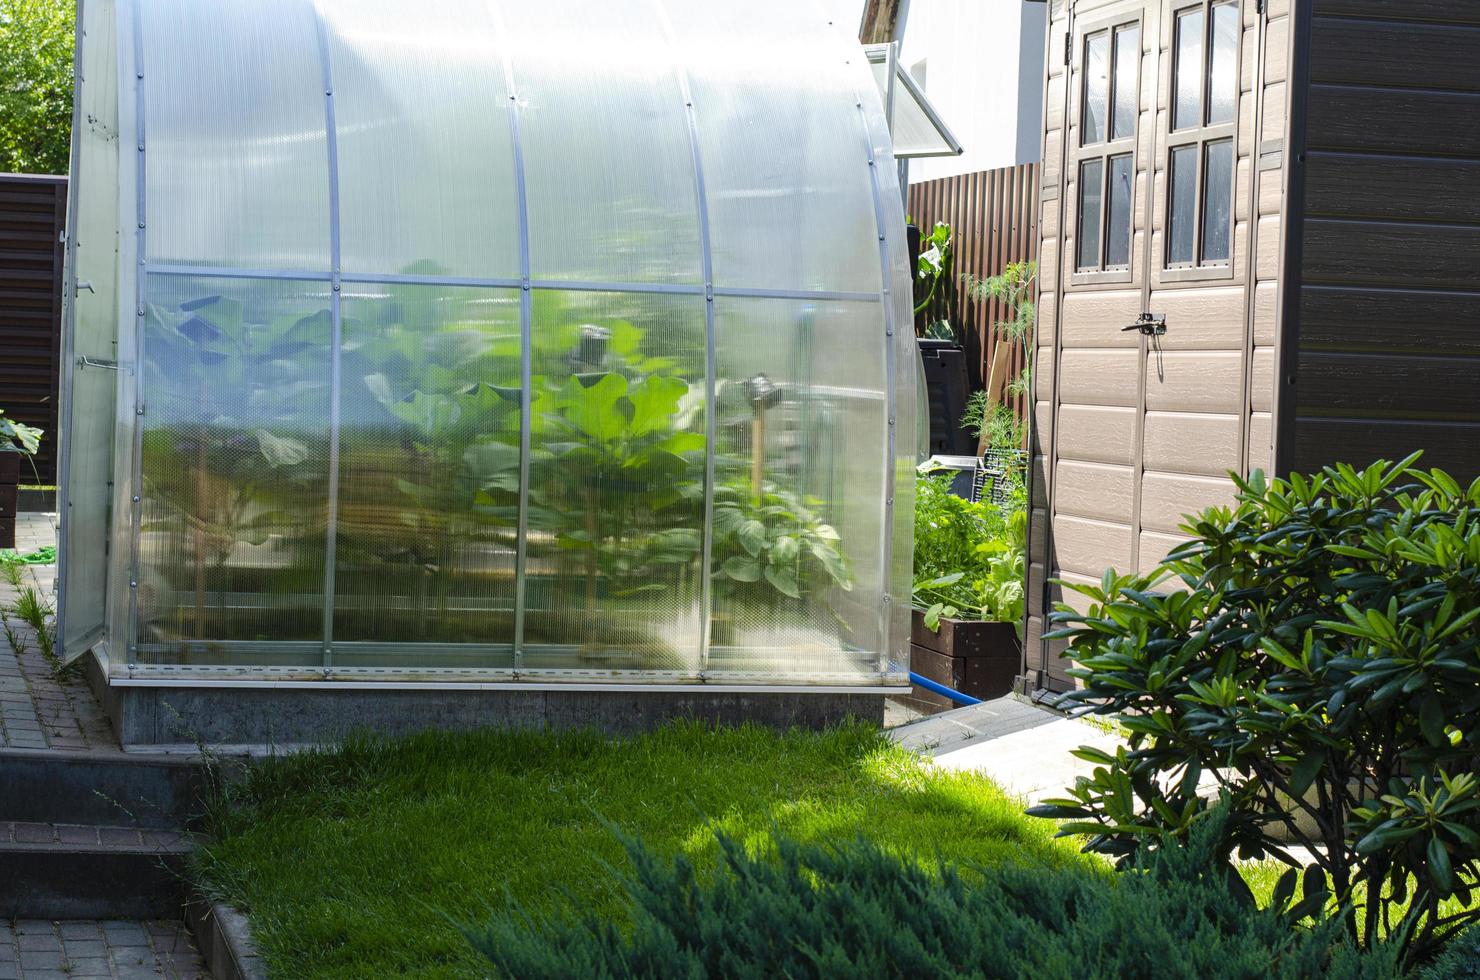 invernadero para cultivar hortalizas en el jardín cerca de la casa foto